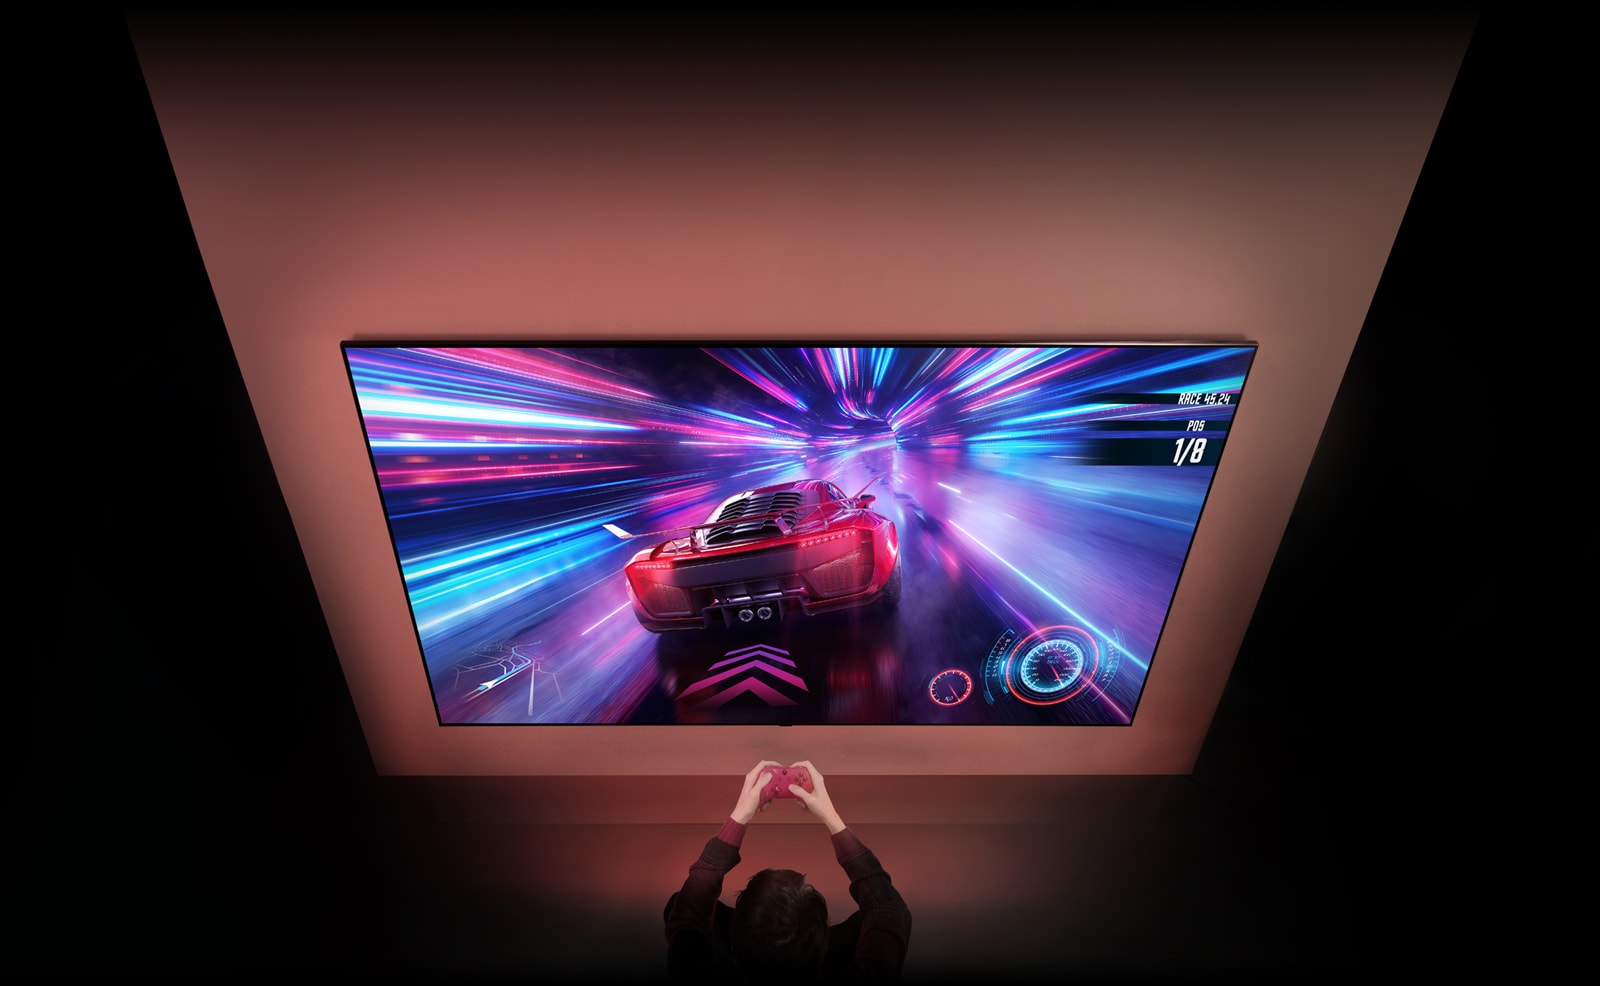 Suuri televisio on seinällä, ja näytöllä näkyy käynnissä oleva autopeli. Television edessä peliohjain näkyy peliin keskittyneen henkilön käsissä.